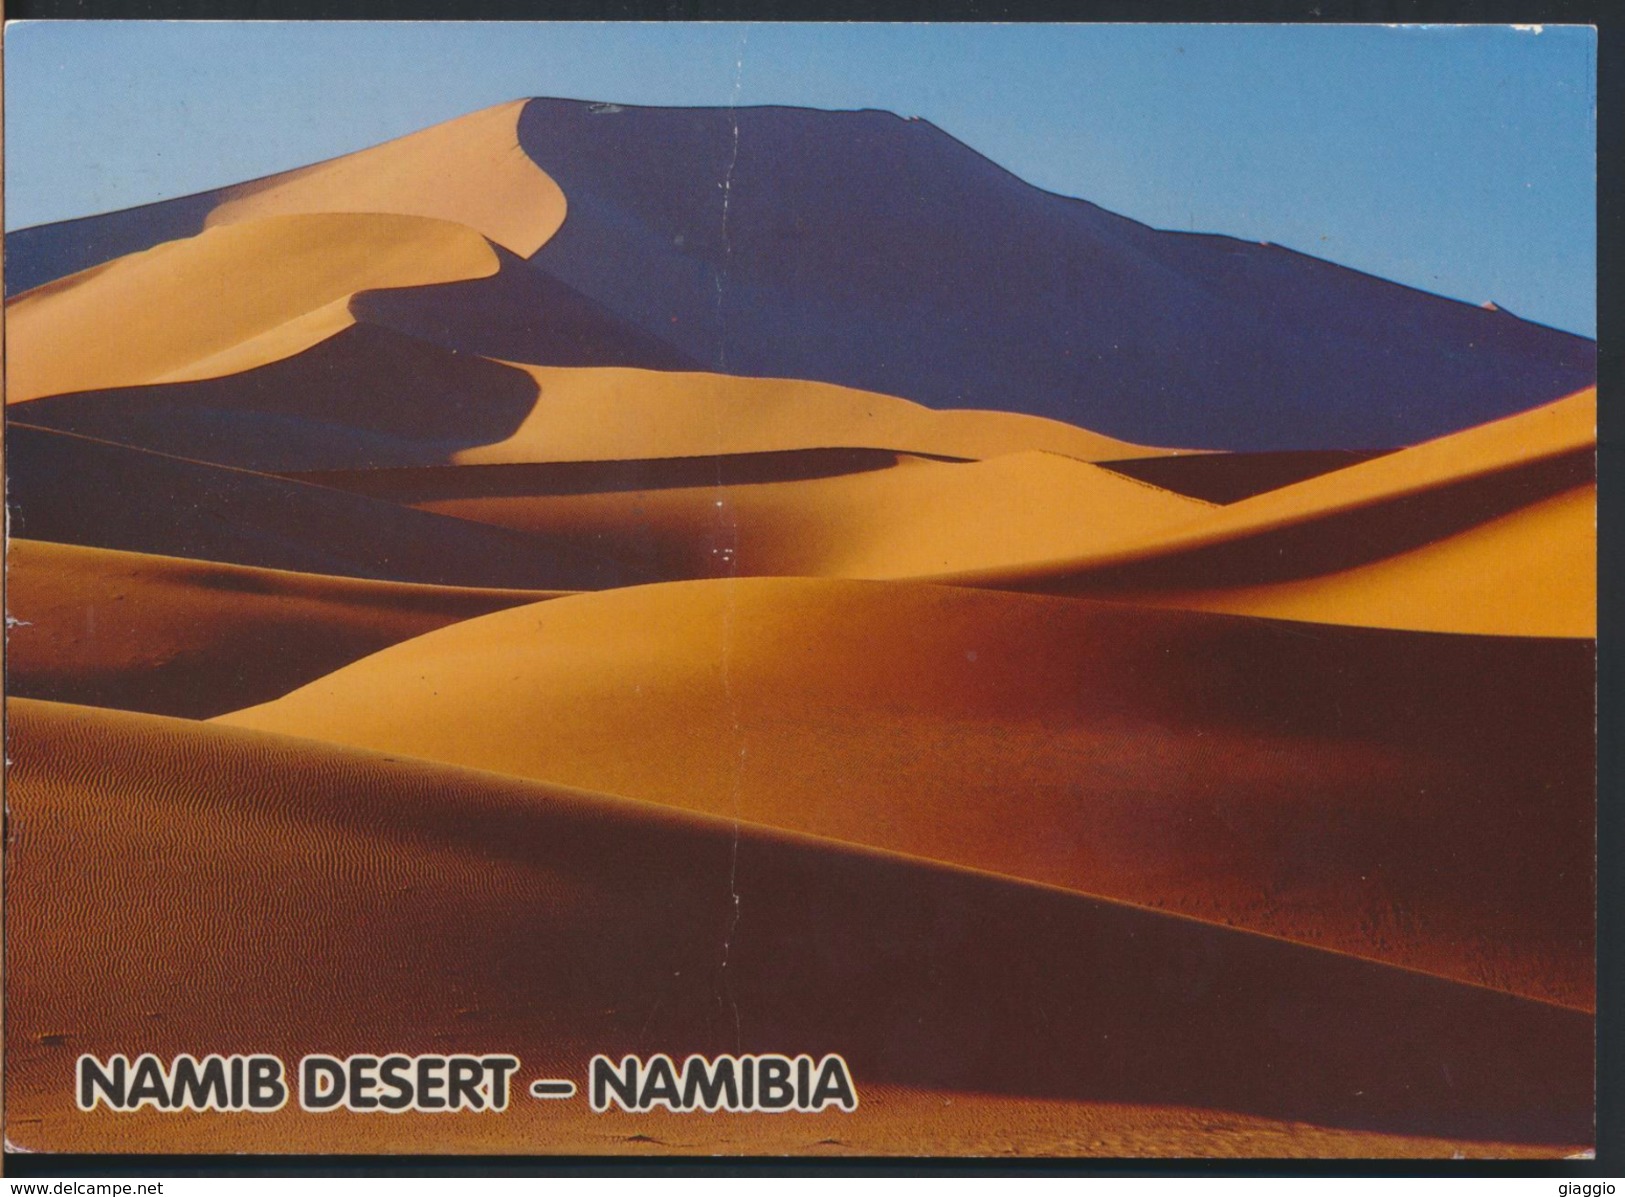 °°° 83 - NAMIBIA - DESERT NAMIB - 1997 °°° - Namibie